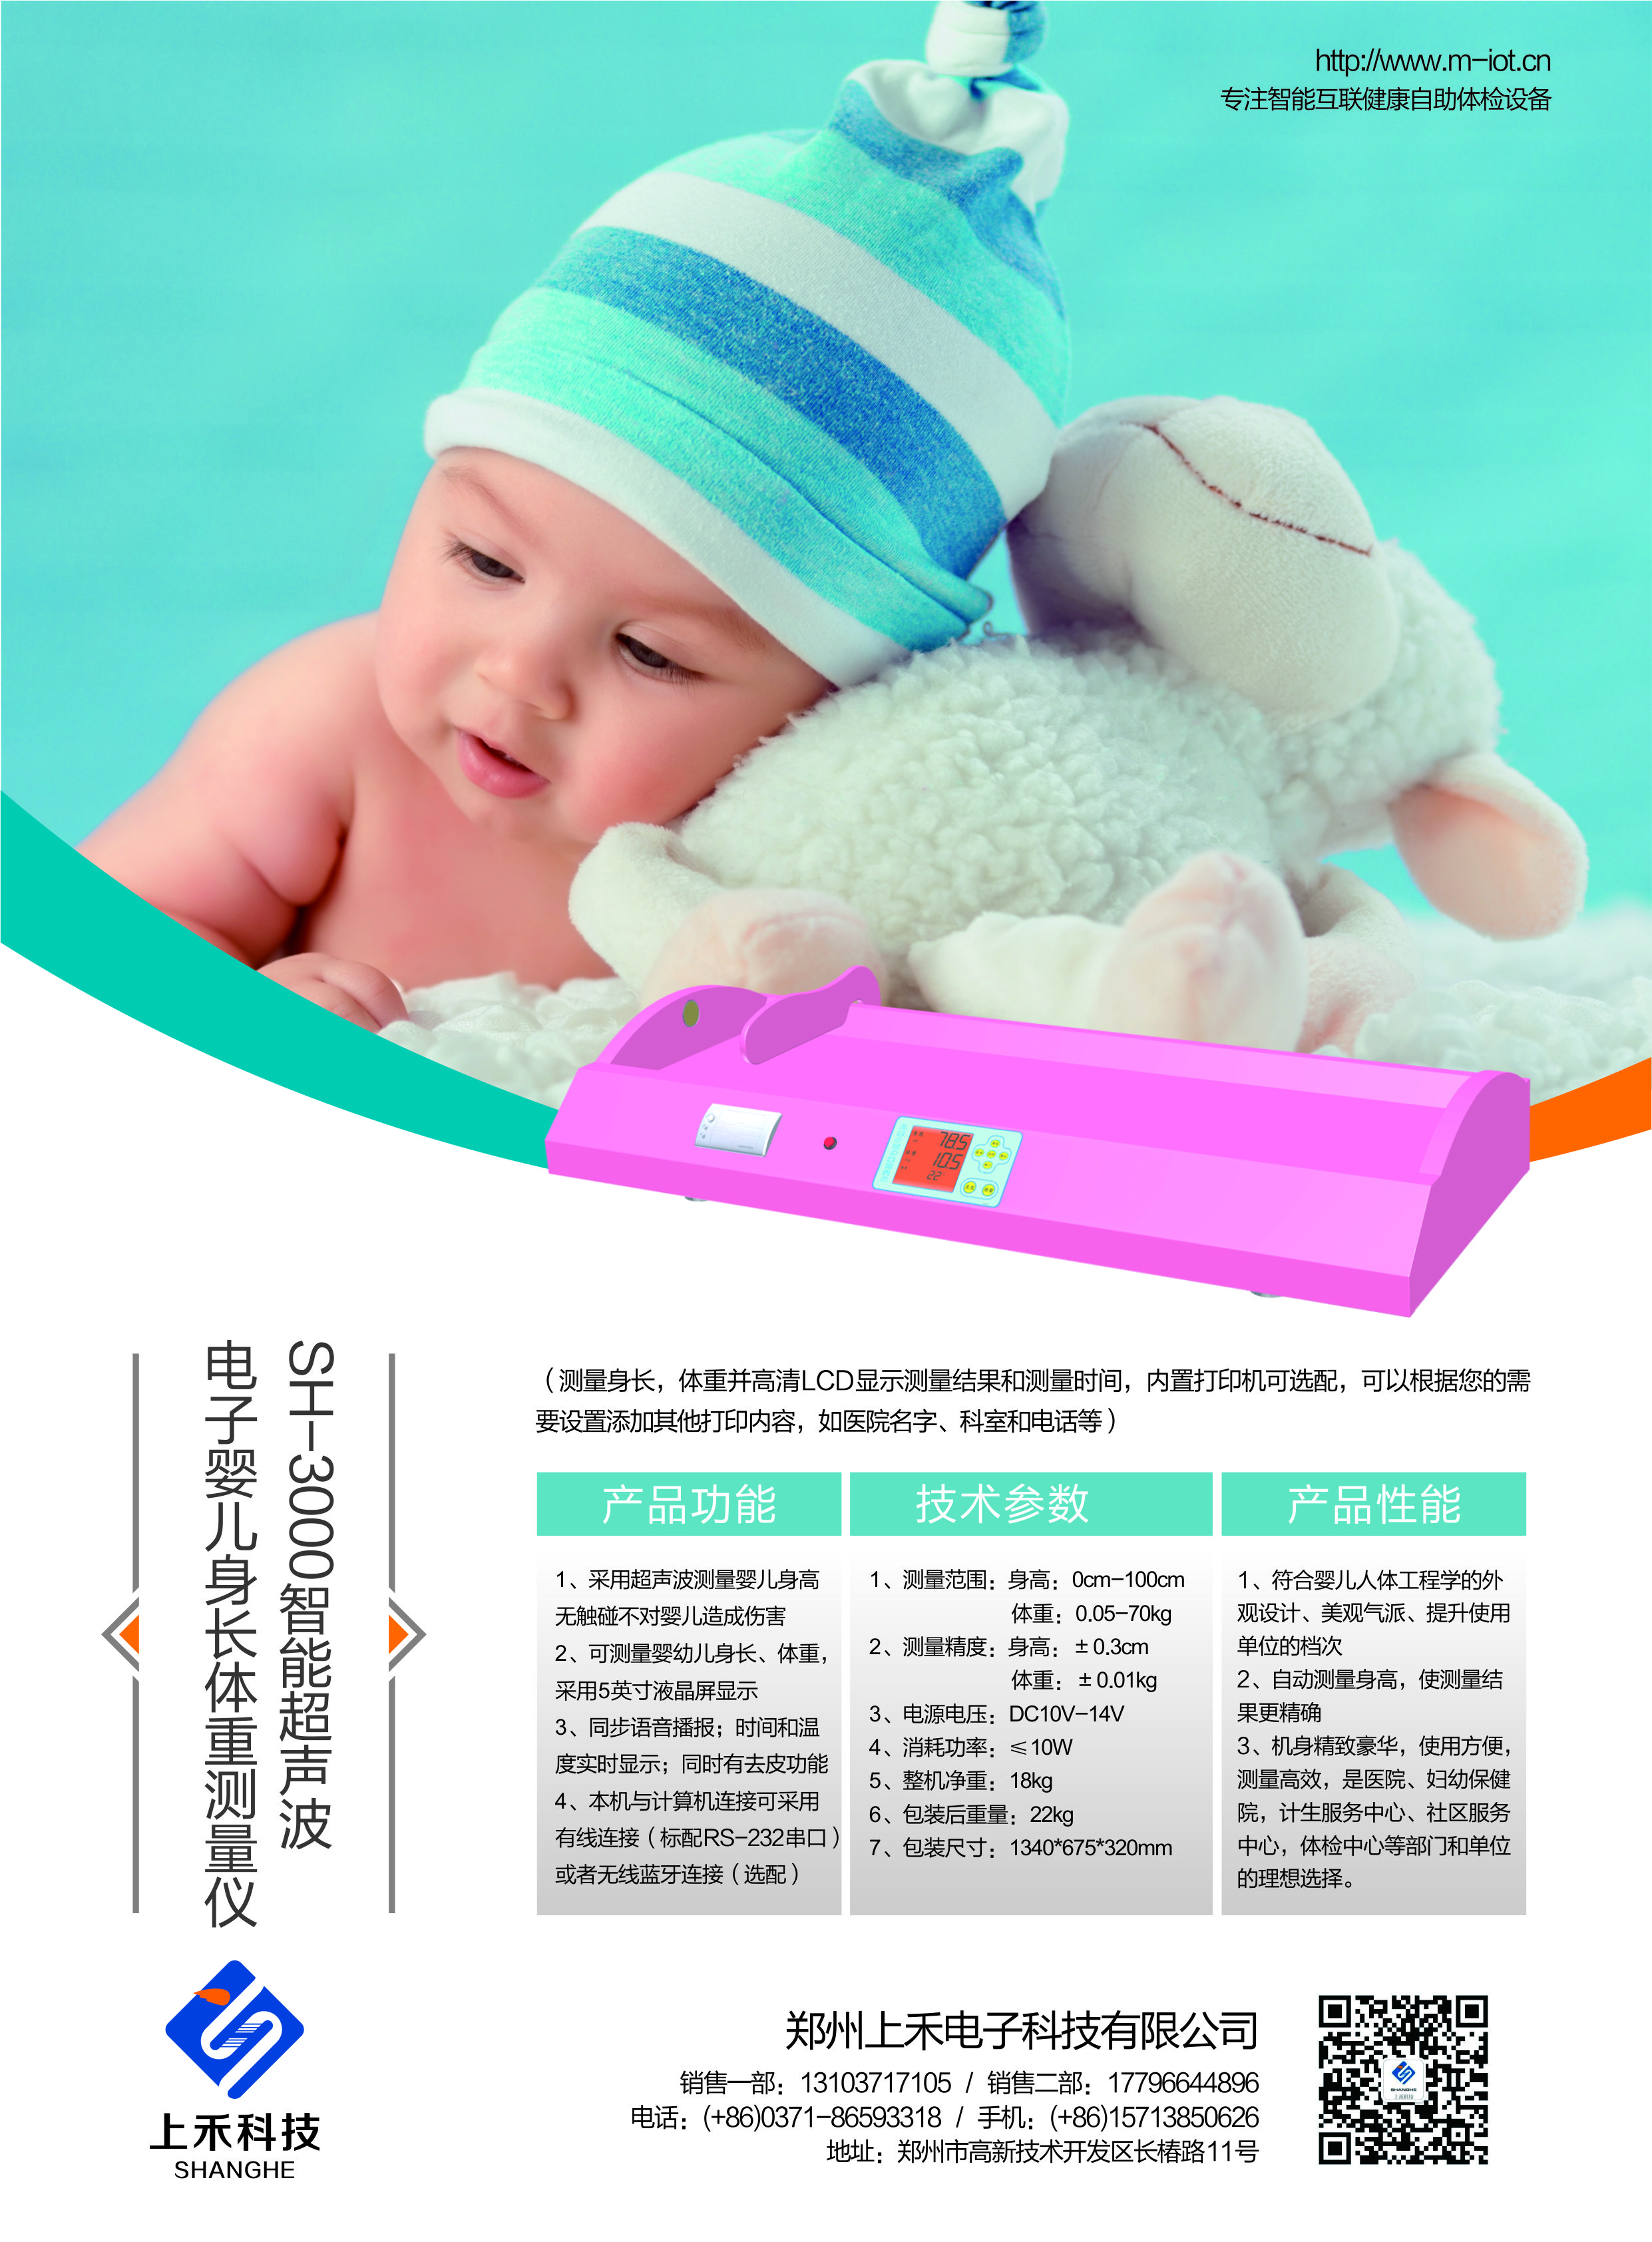 SH-3000自动婴儿身长体重测量仪